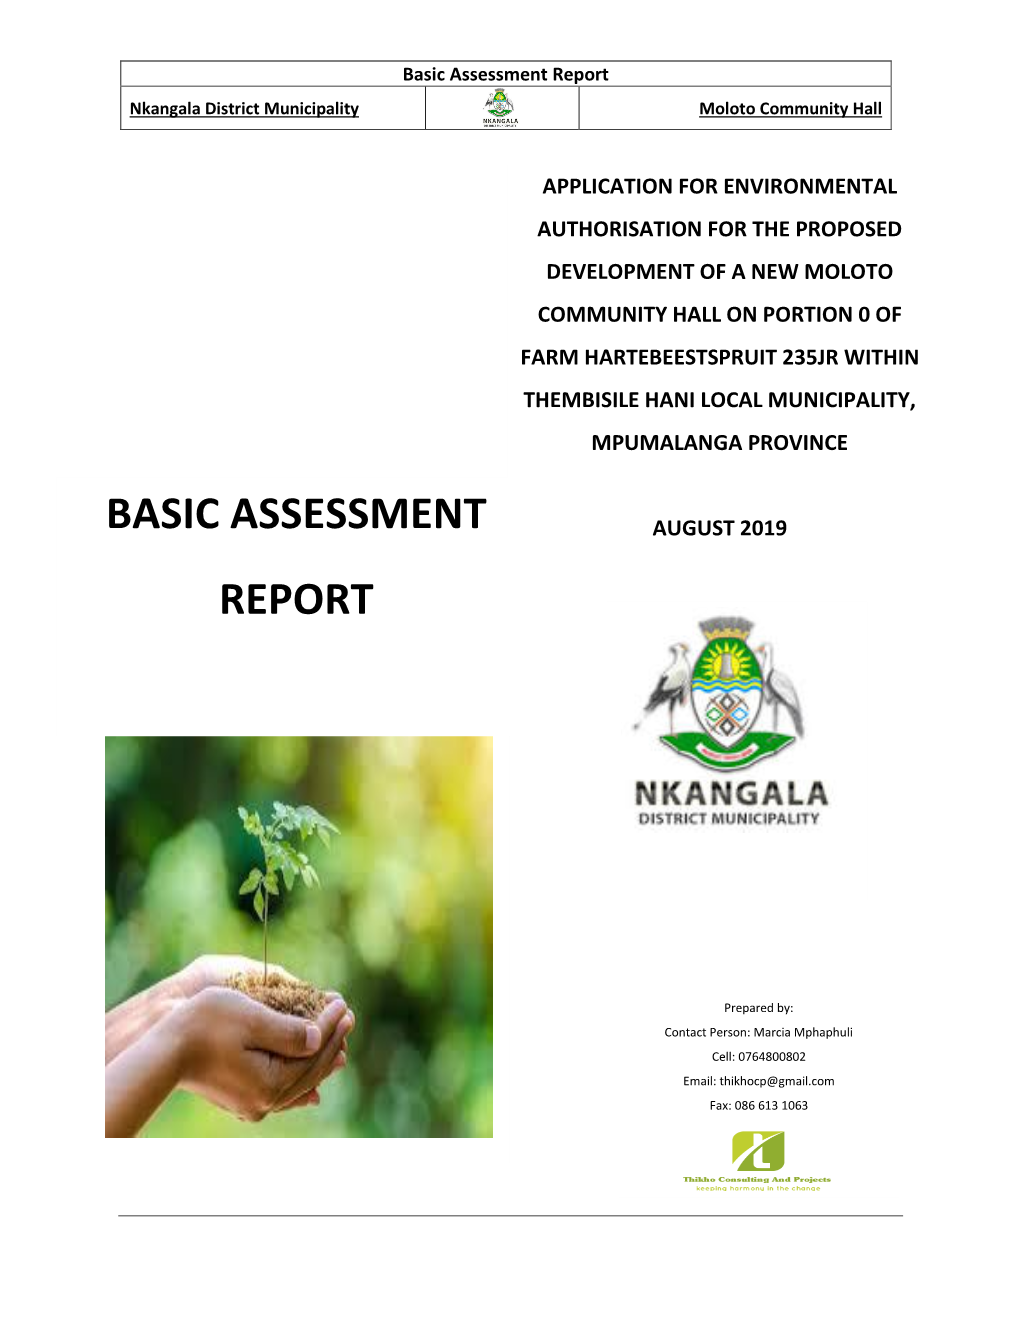 Basic Assessment Report Nkangala District Municipality Moloto Community Hall